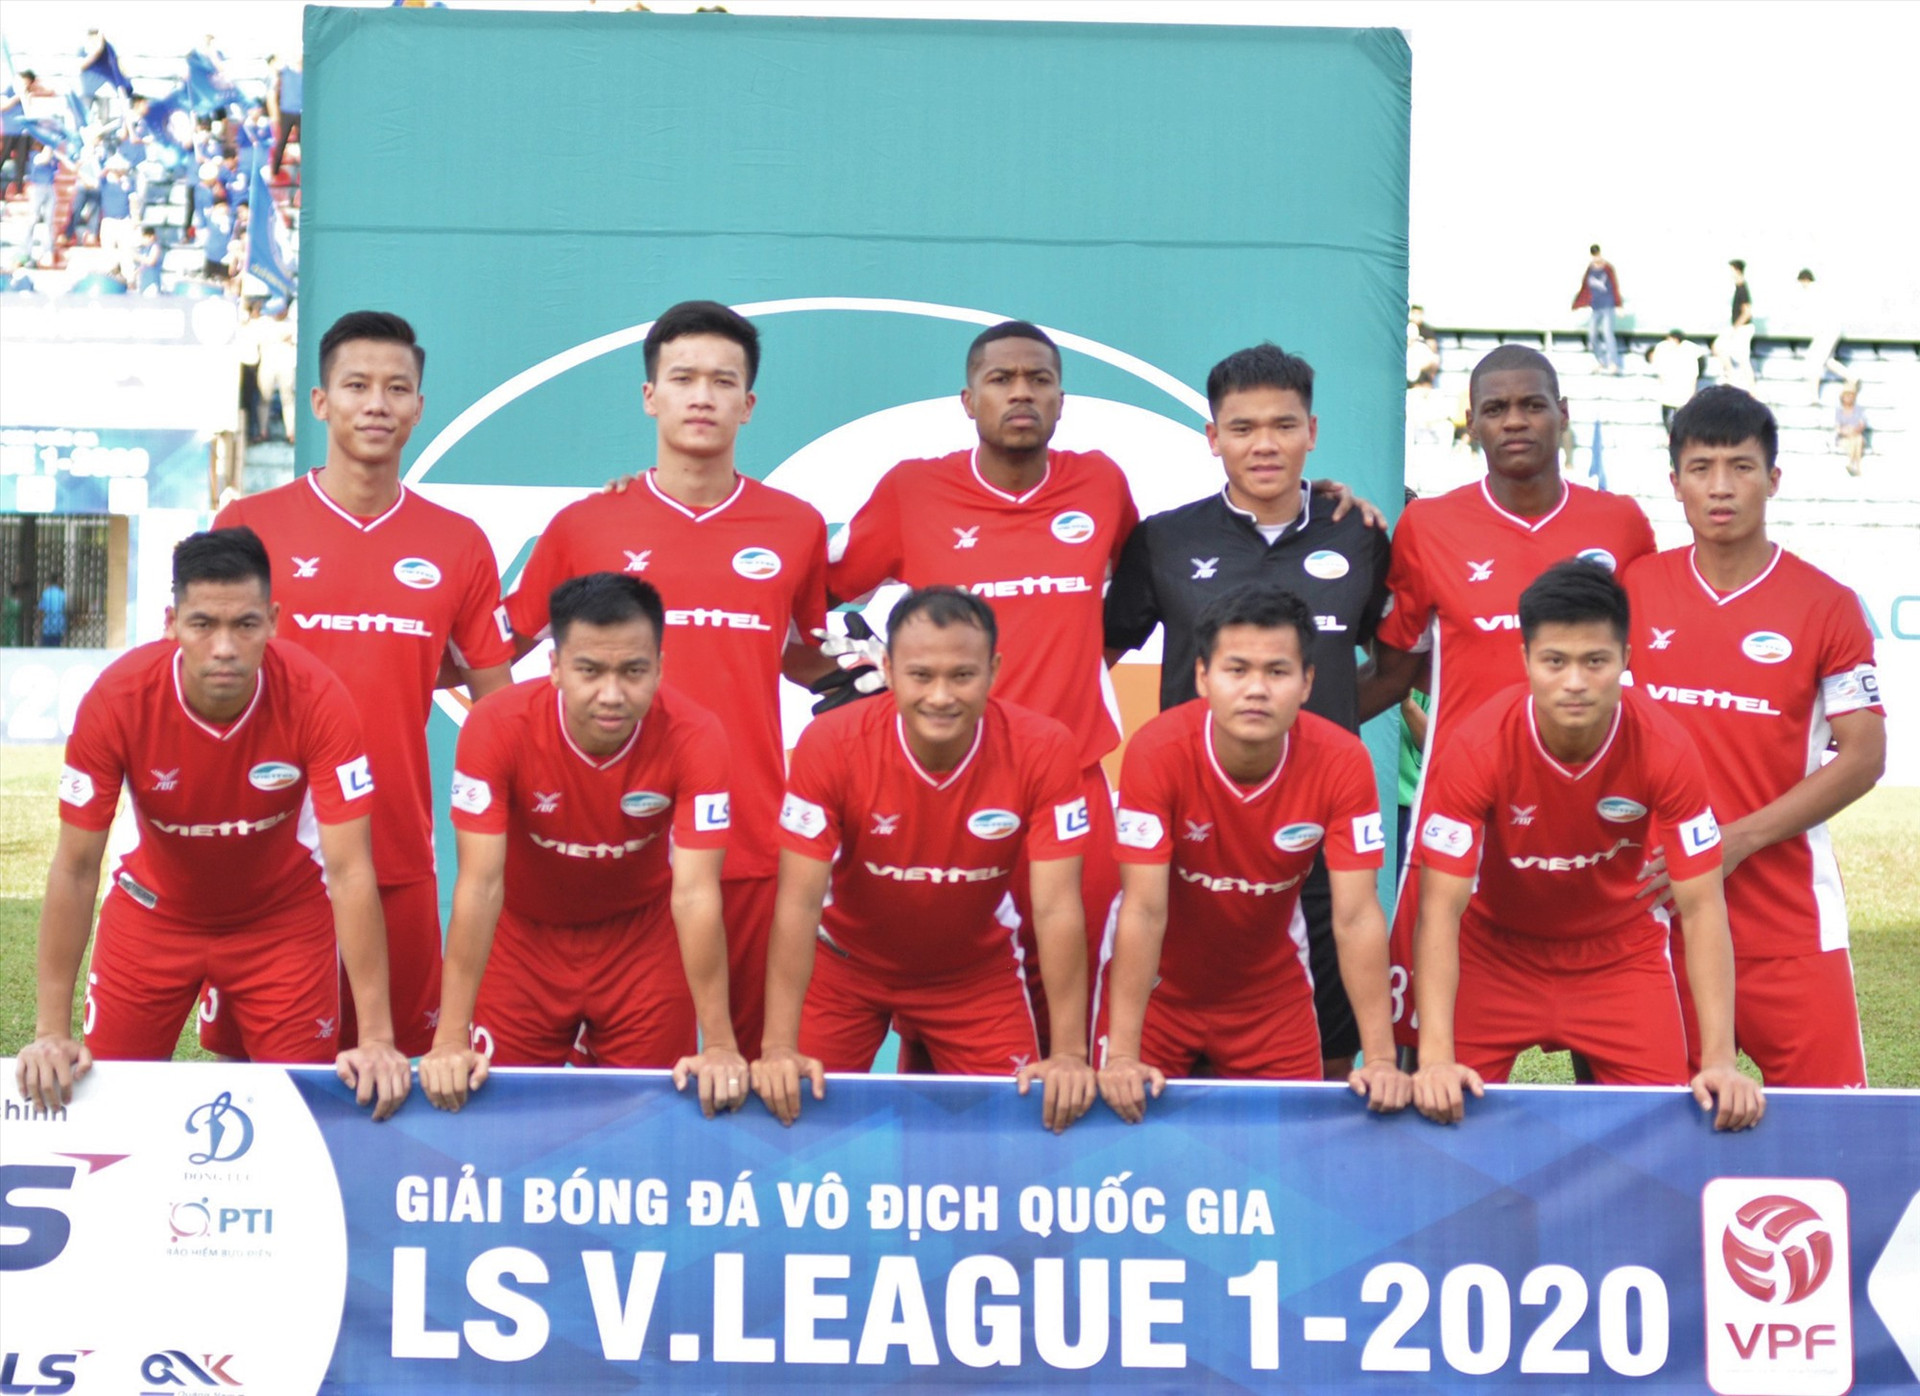 Thành tích của Viettel tại AFC Champions League mở ra cánh cửa hy vọng cho các đội bóng Việt Nam. Ảnh: A.NHI